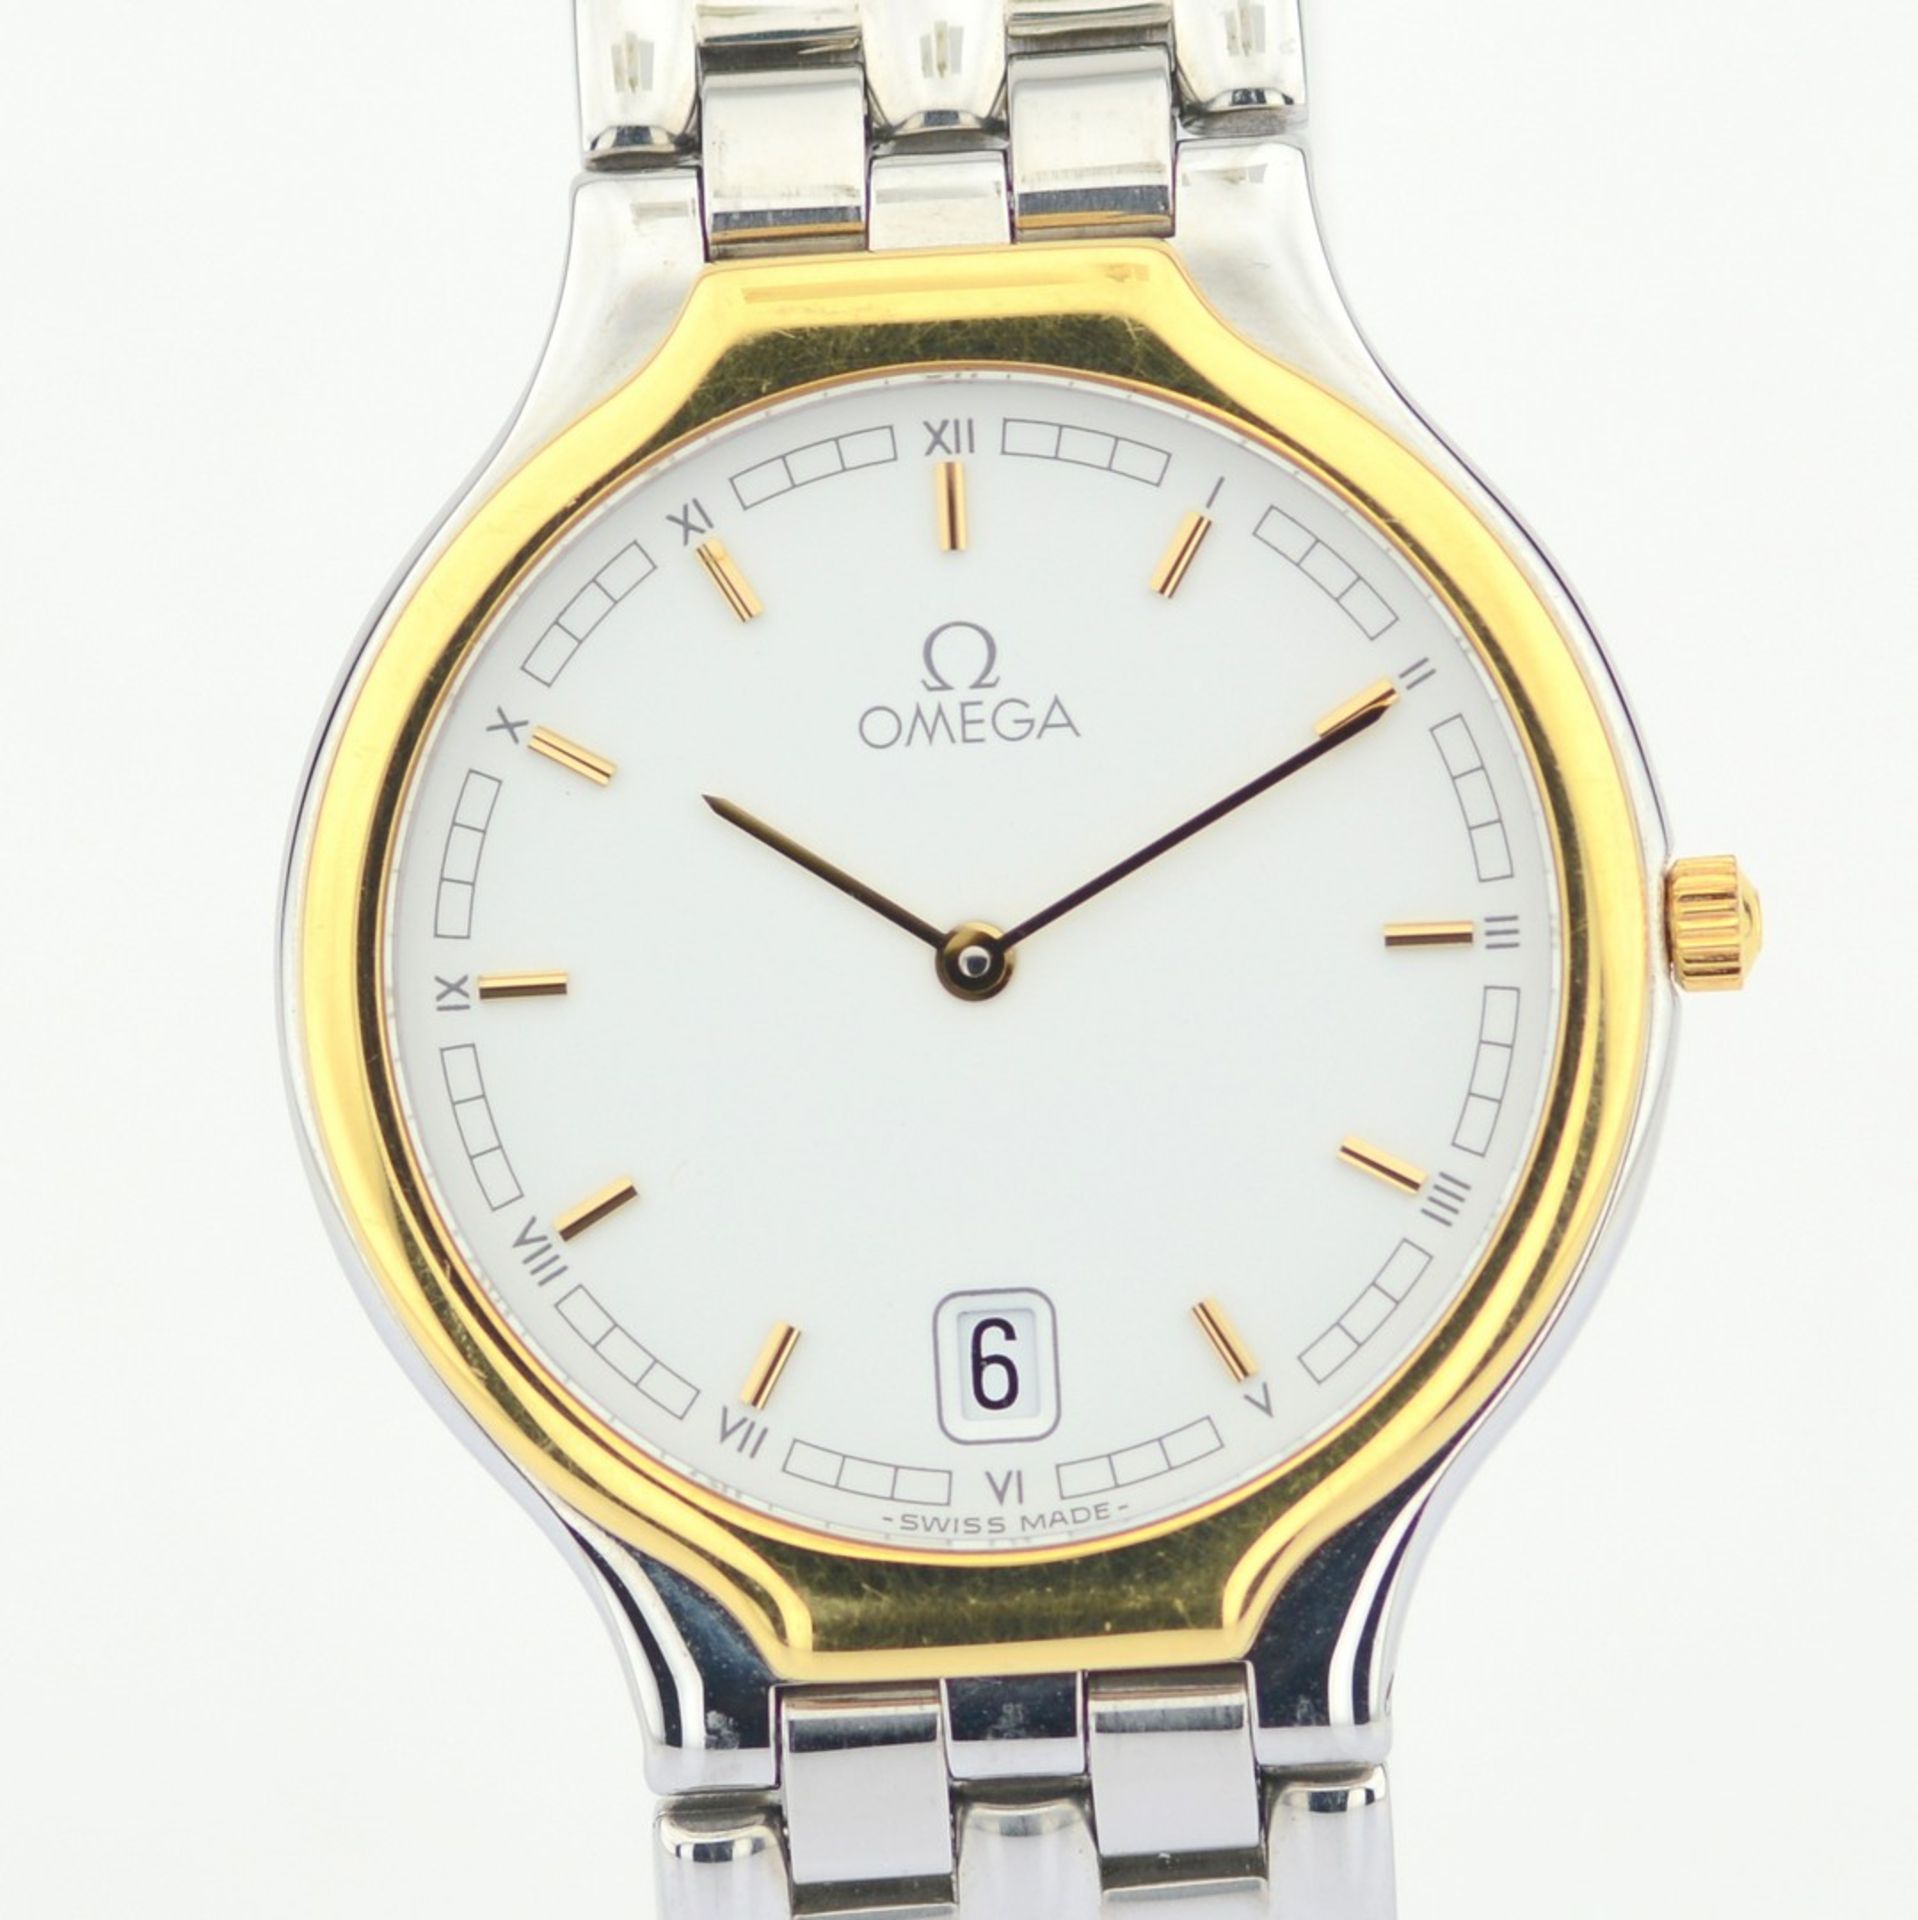 Omega / De Ville Symbol 18K Yellow Gold / S. Steel - Unisex Gold/Steel Wrist Watch